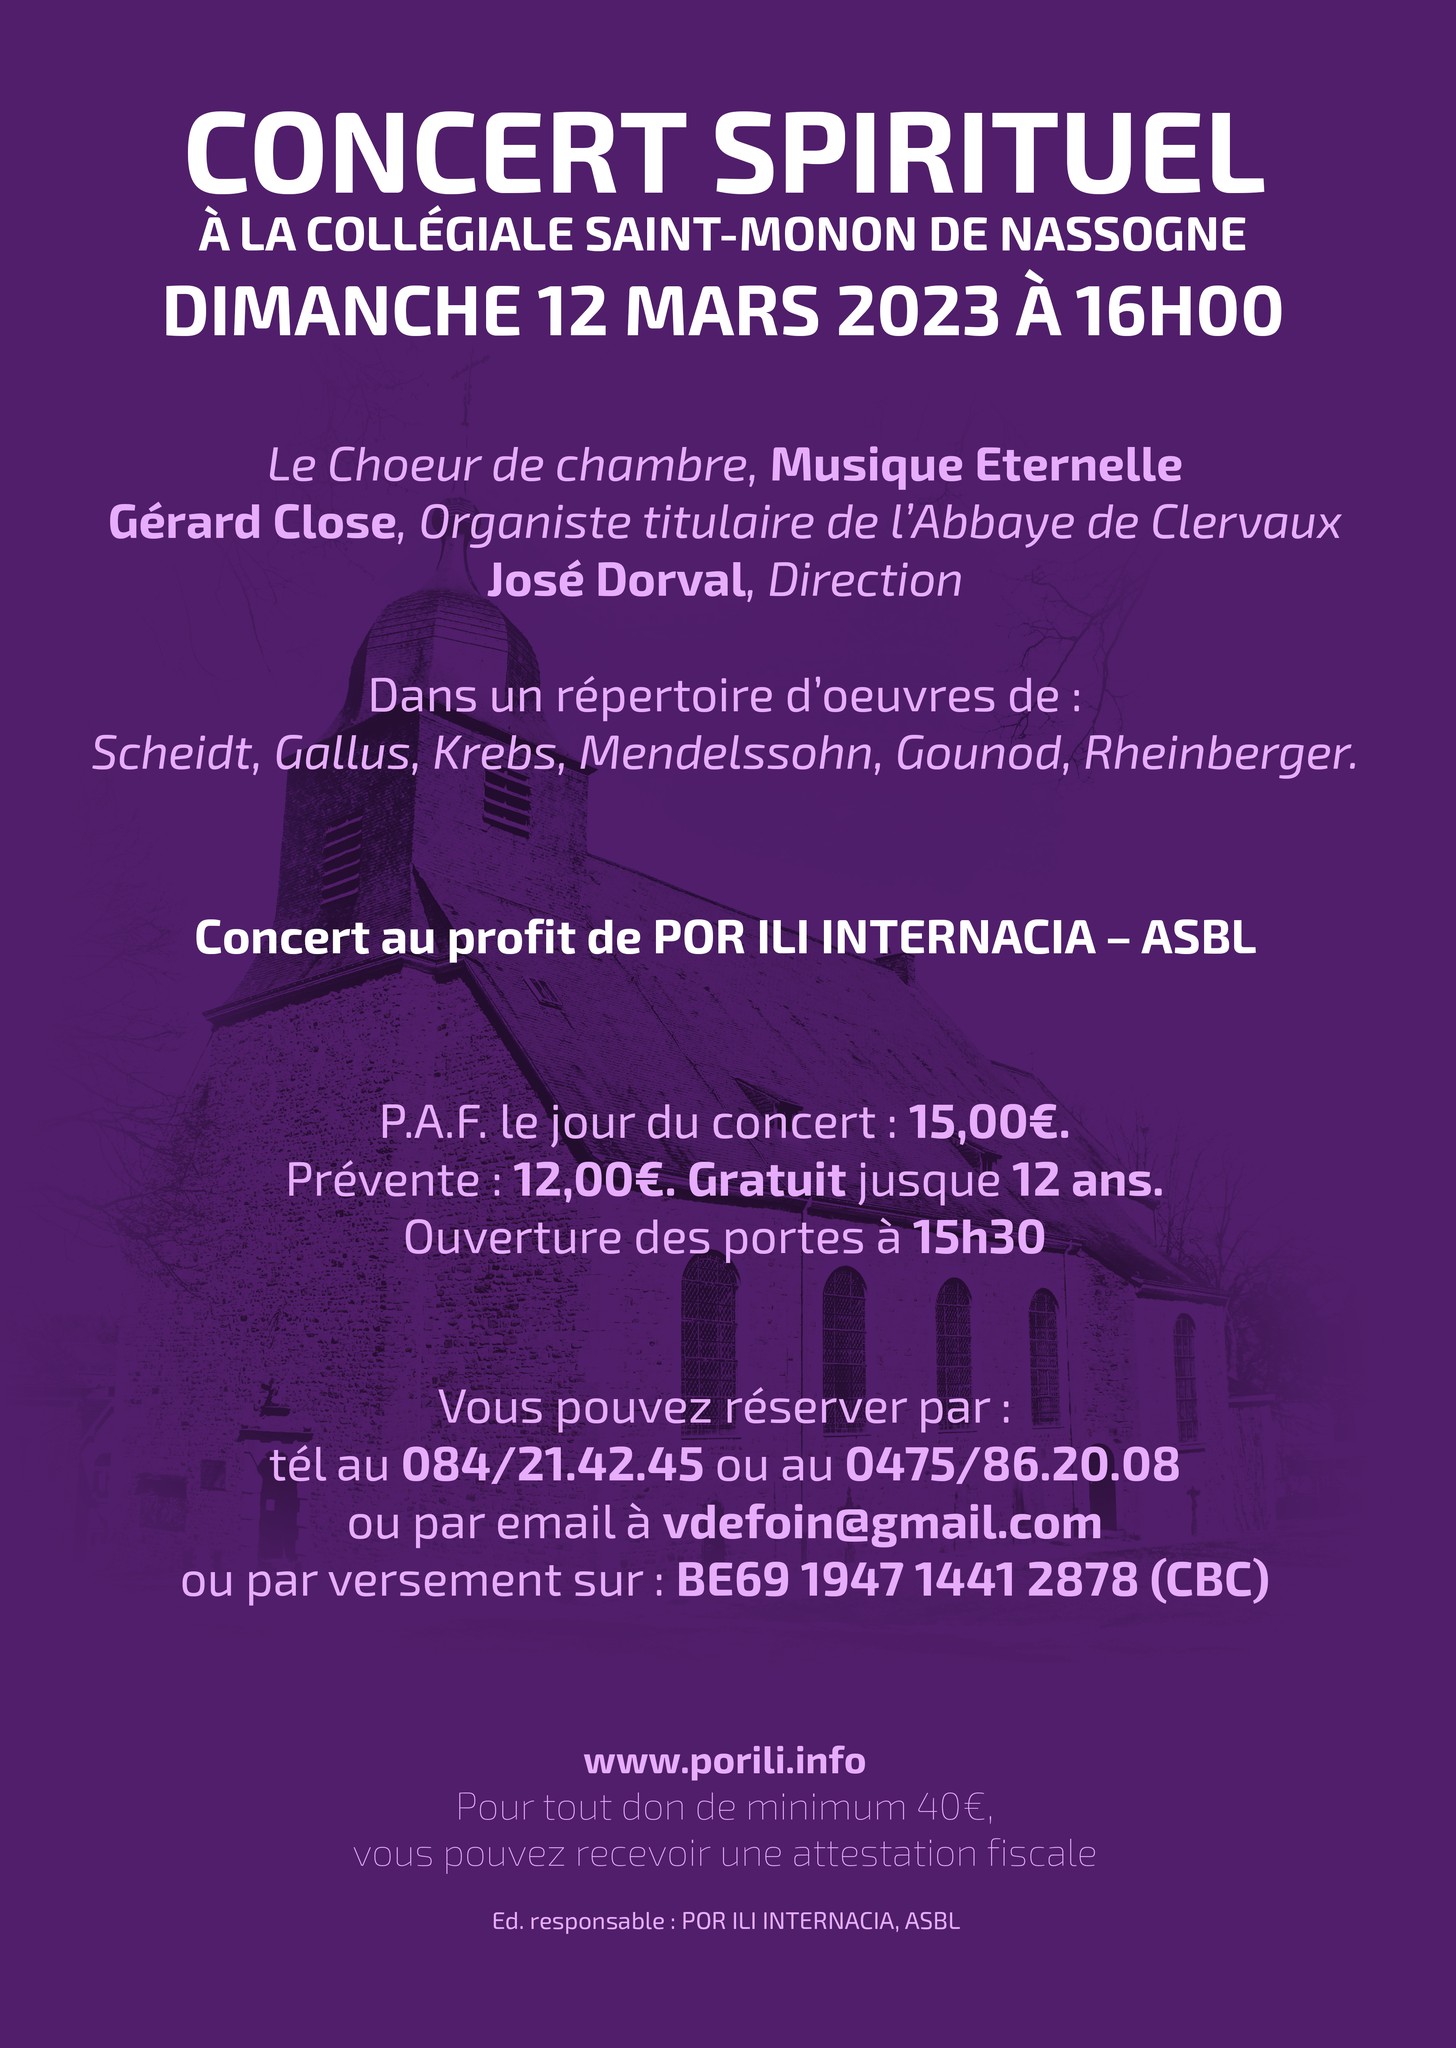 Concert spirituel, collégiale St-Monon à Bassogne, le 15 mars 2023